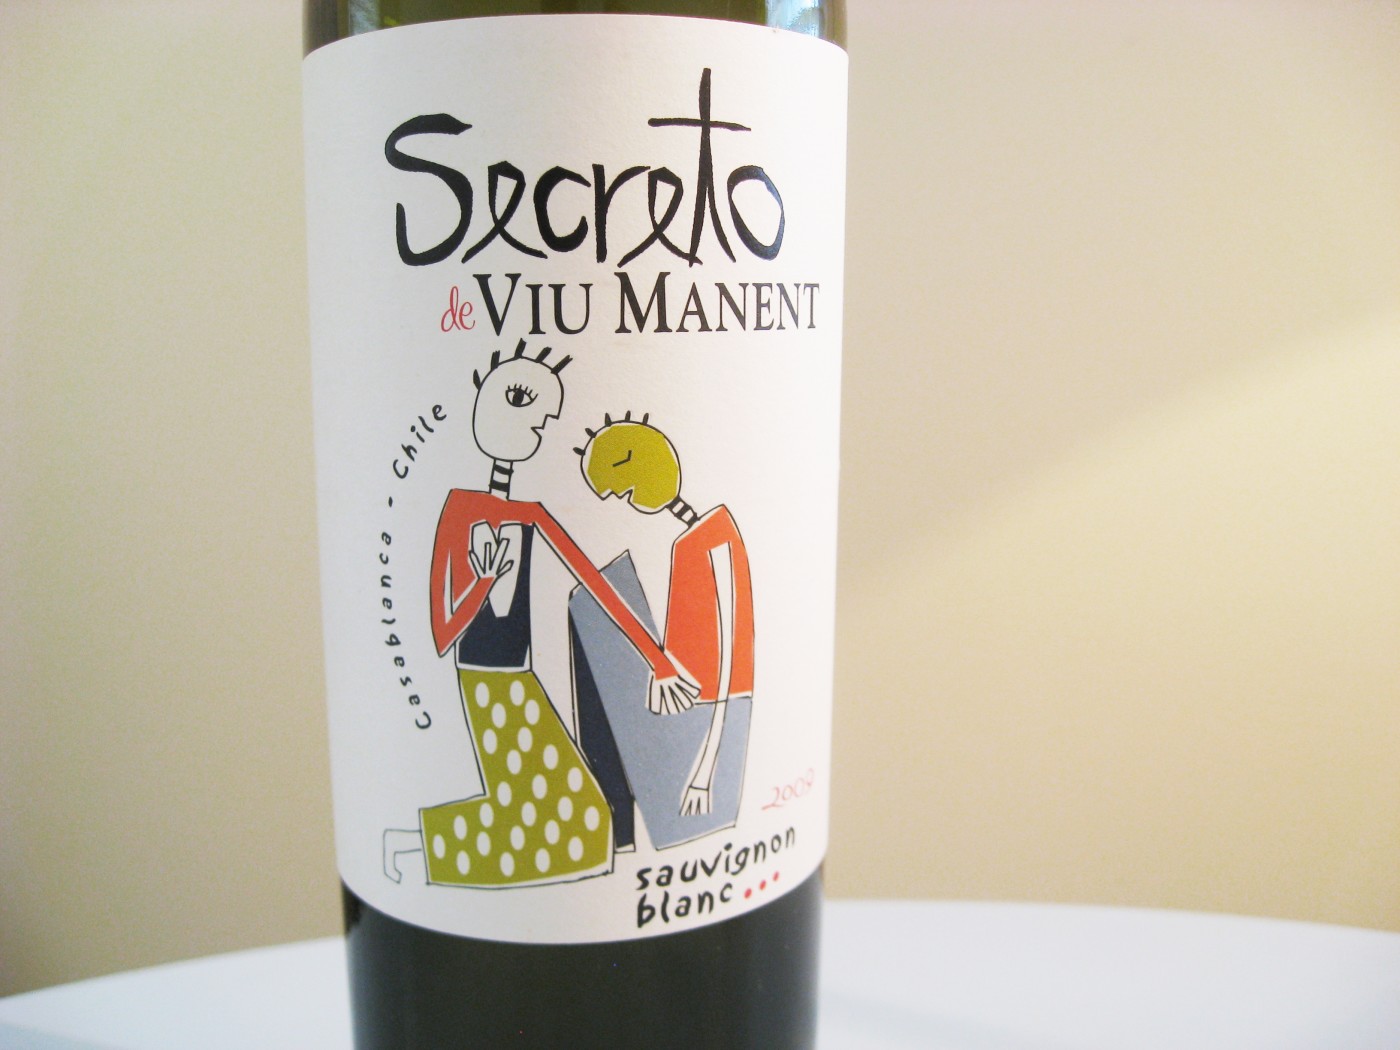 Viu Manent, Secreto, Sauvignon Blanc 2009, Casablanca, Chile, Wine Casual